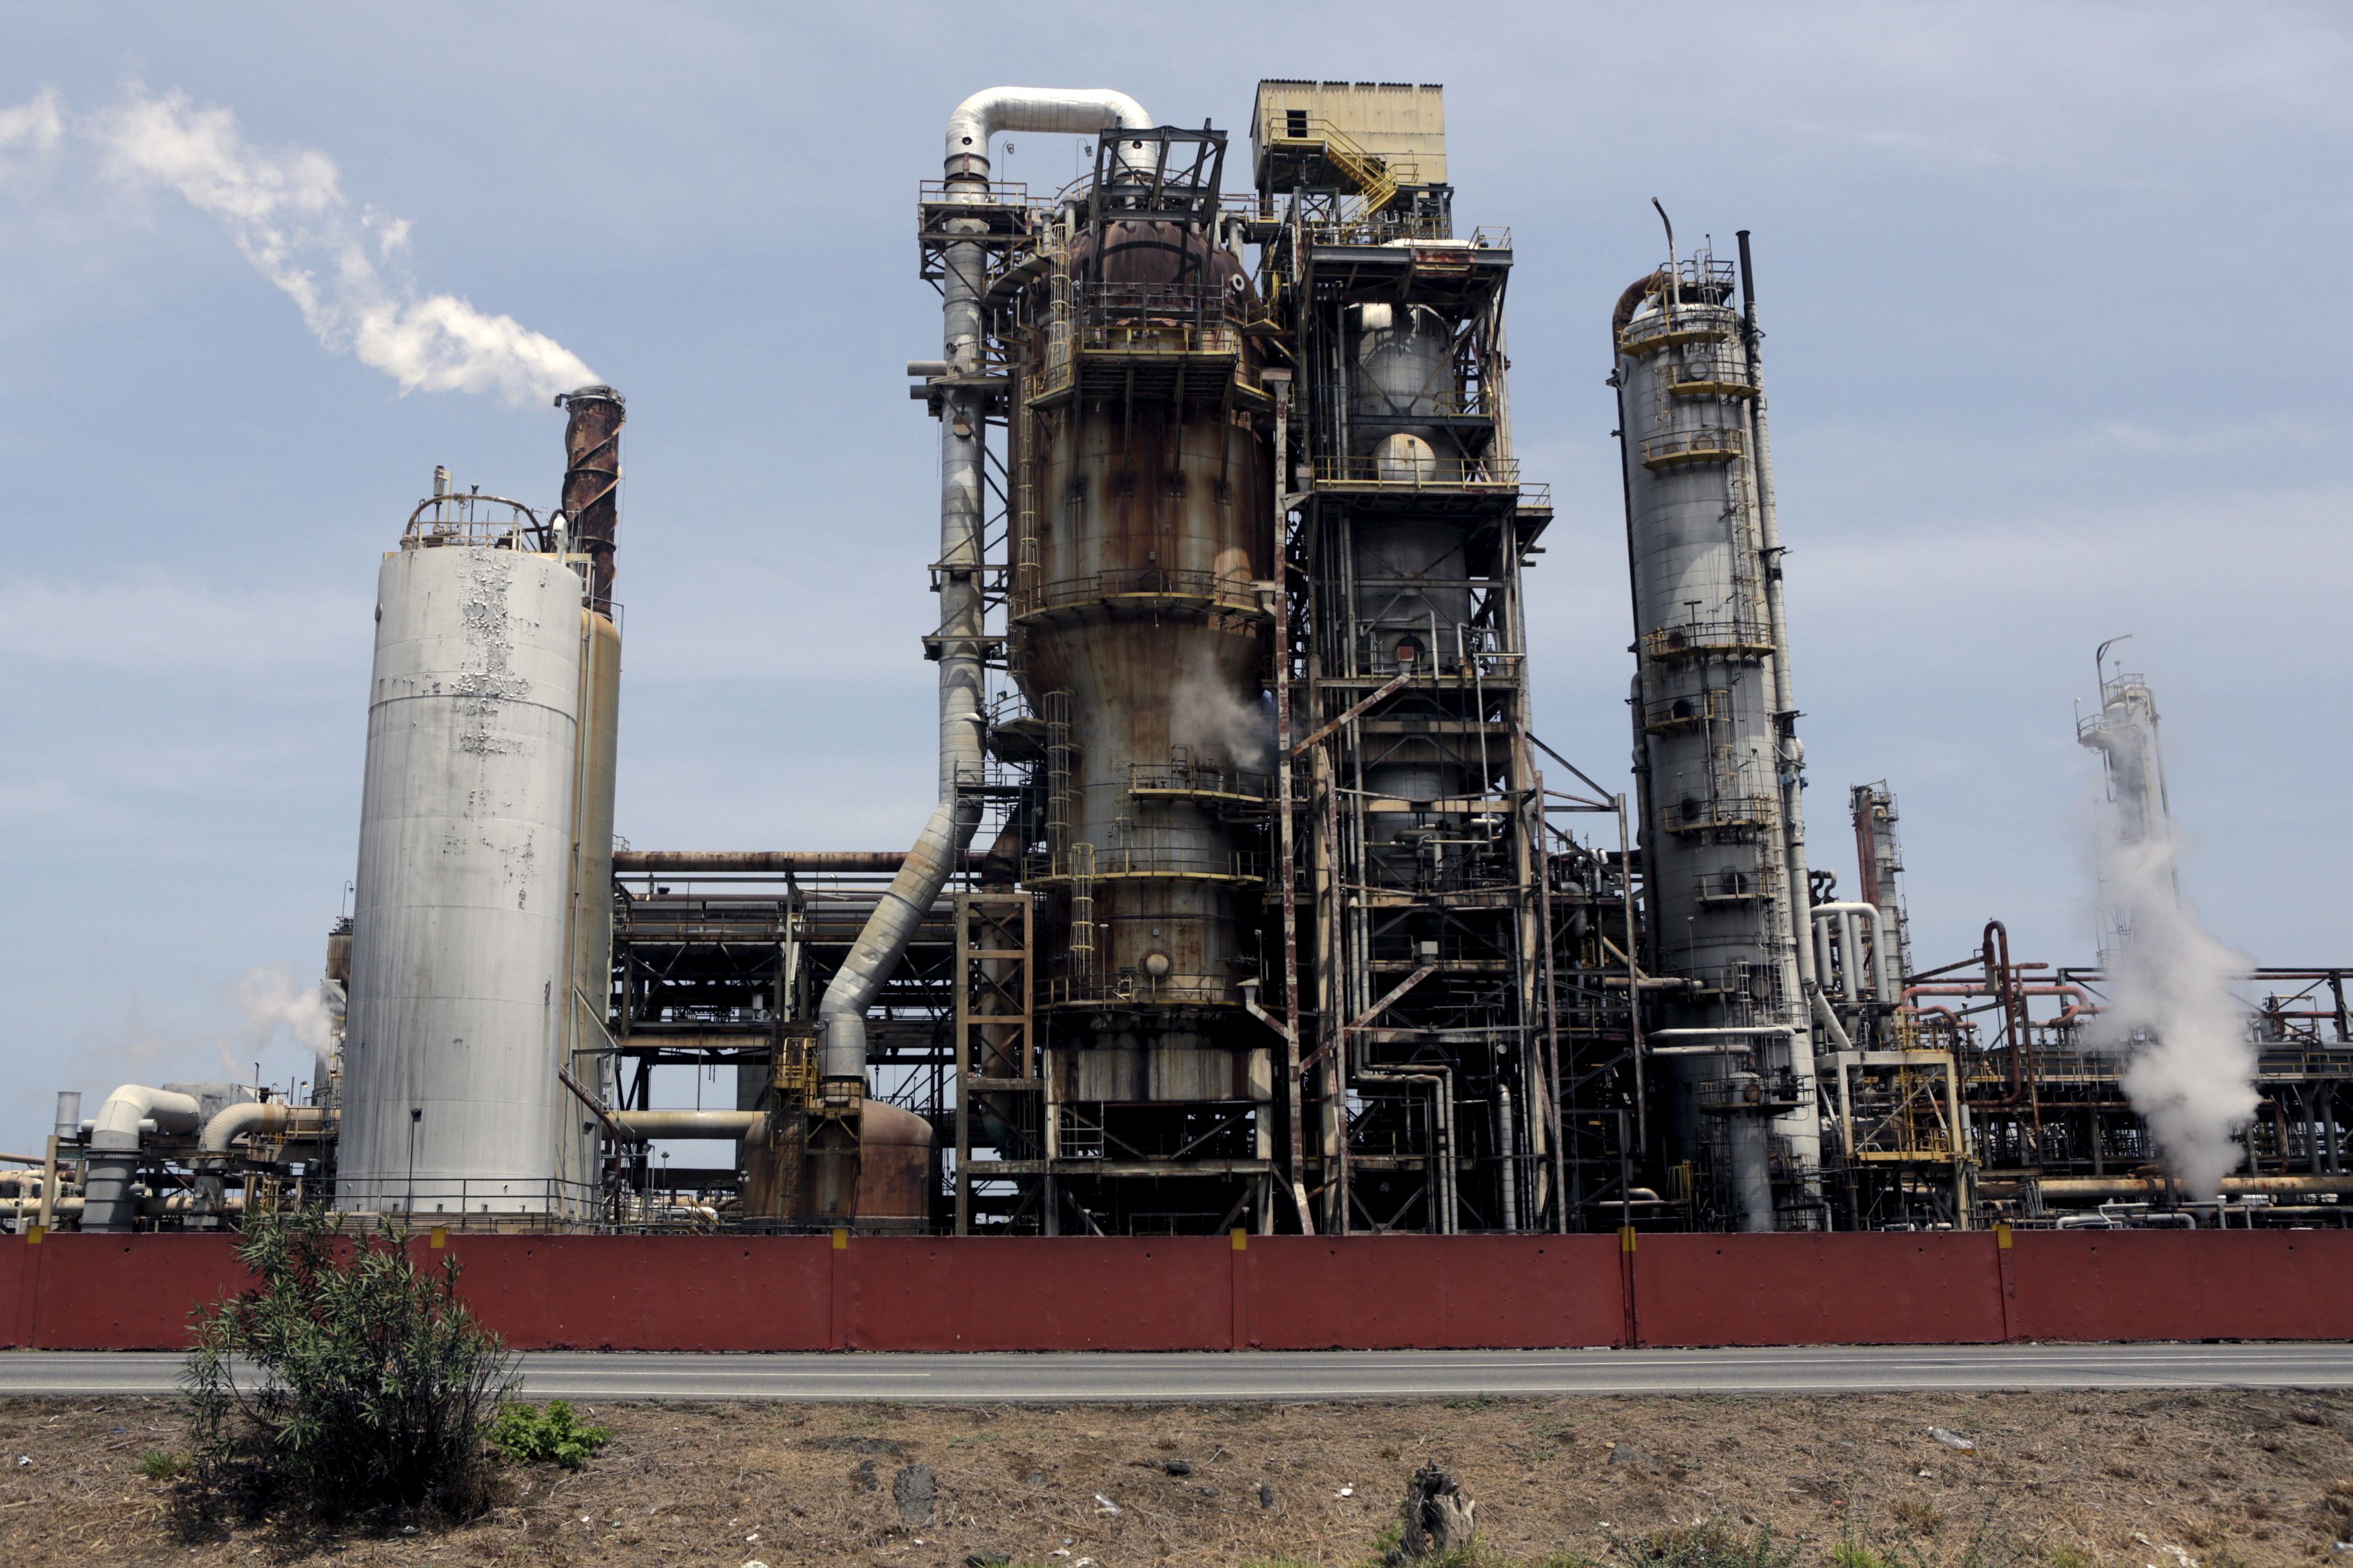 Enésimo derrame petrolero de Pdvsa afecta playas cercanas a la refinería El Palito (Video)